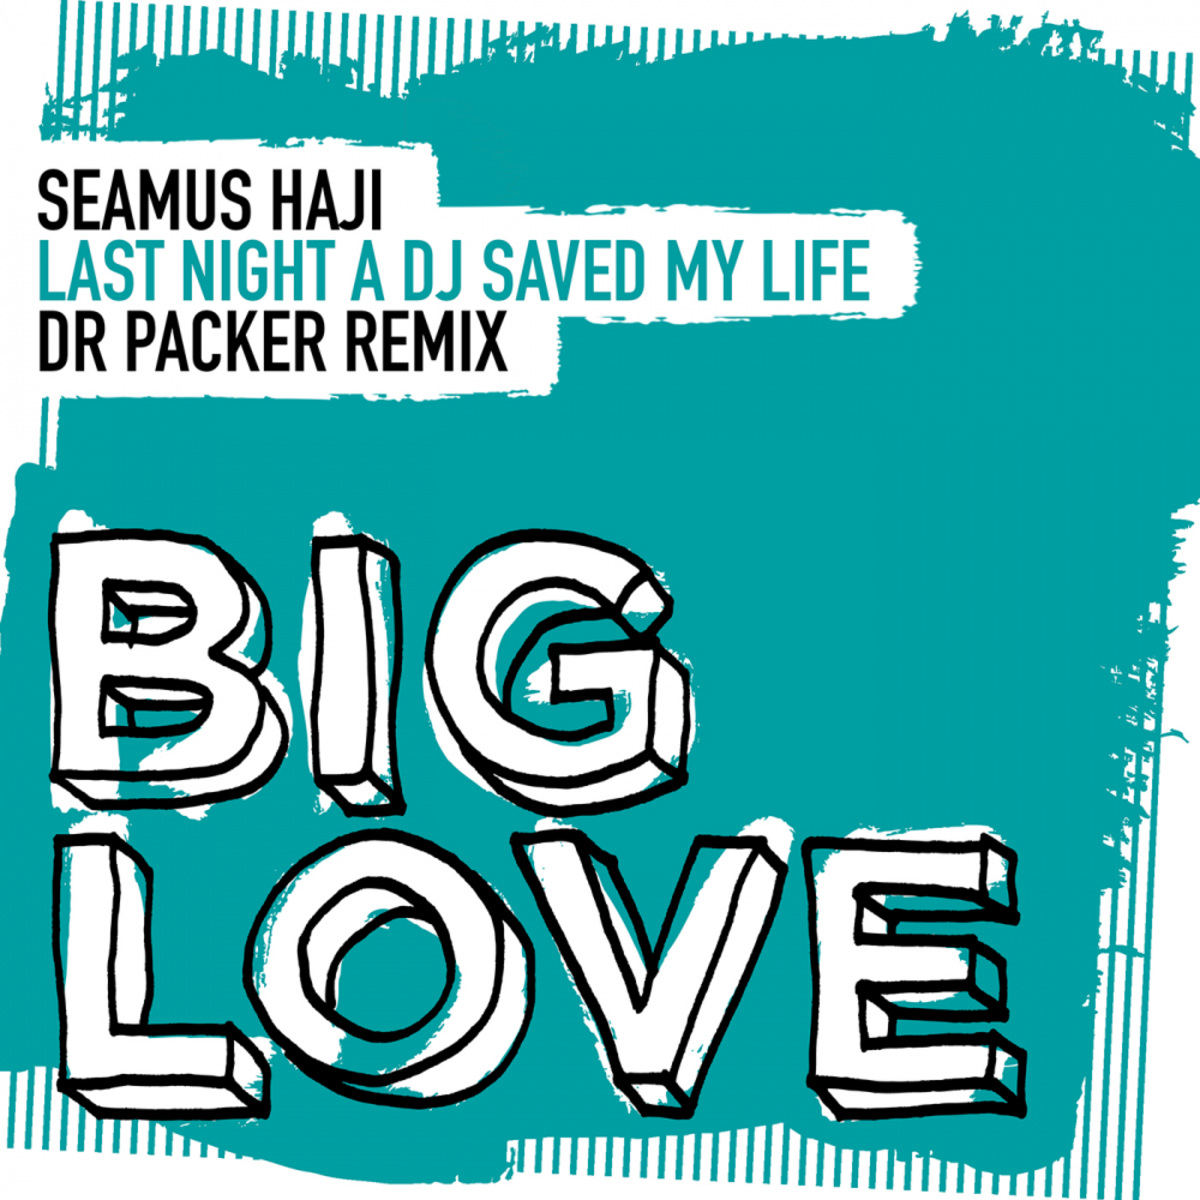 Seamus Haji - Last Night A DJ Saved My Life (Dr Packer Remix) / Big Love